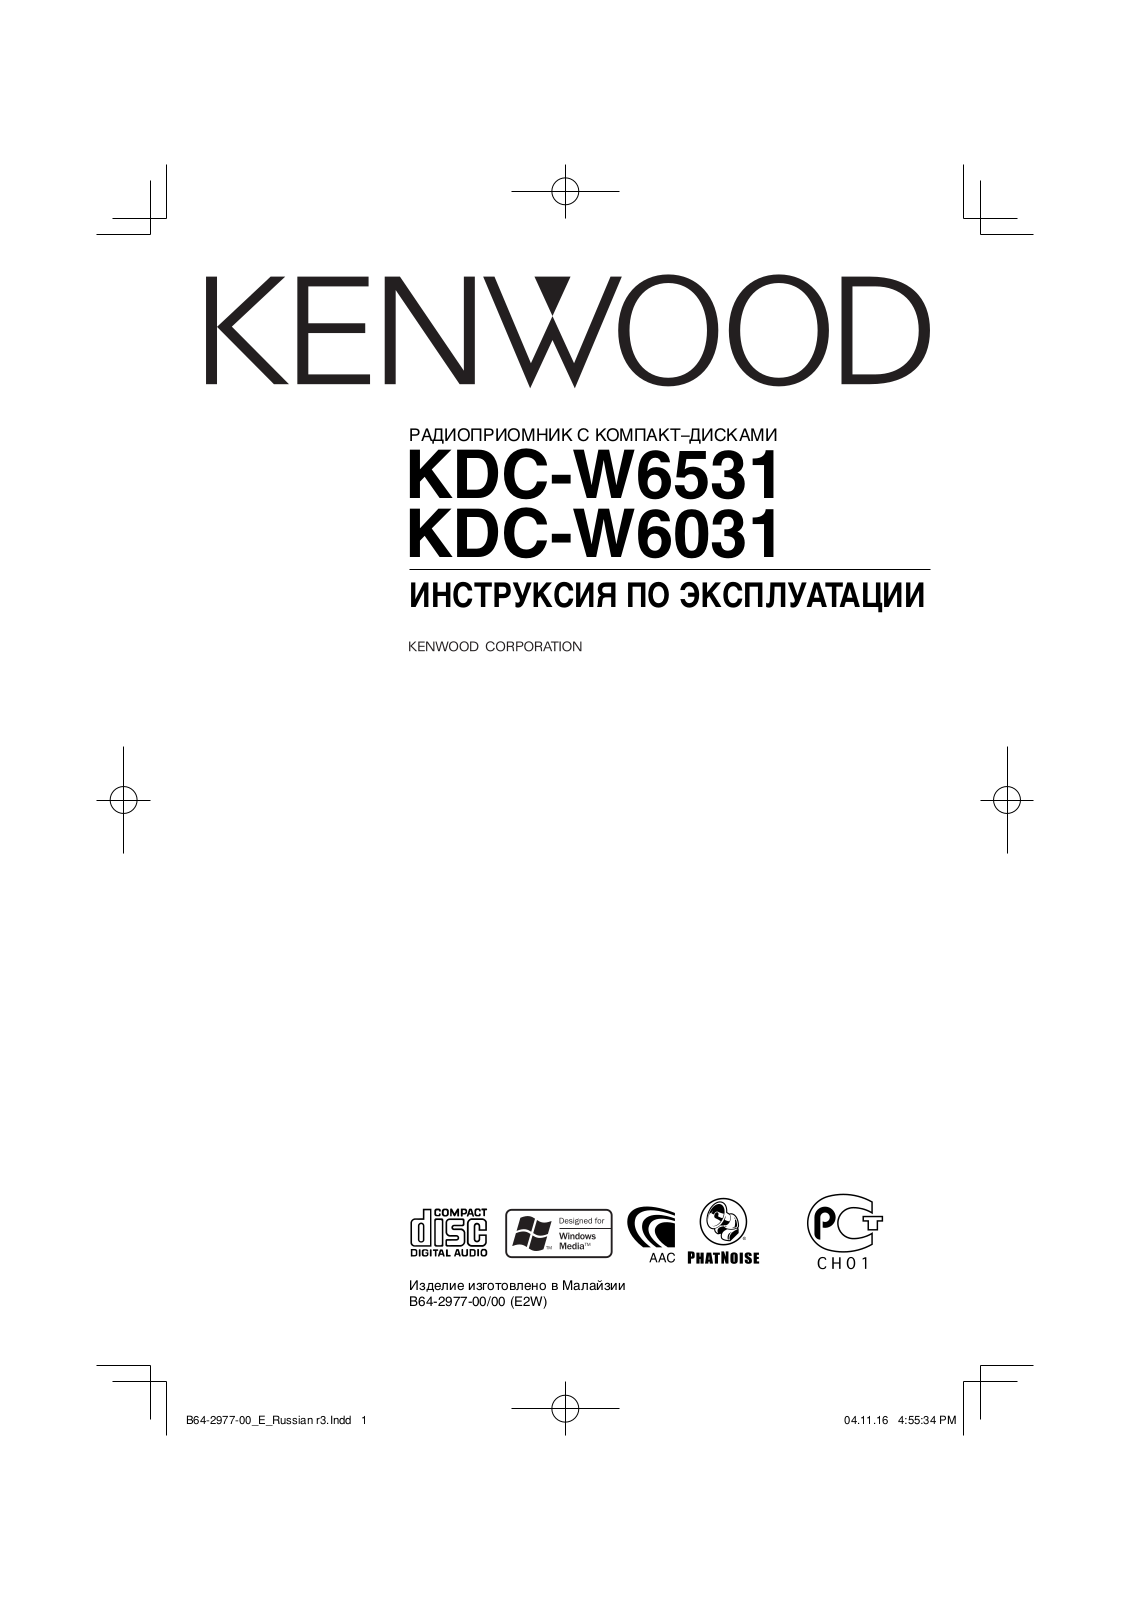 Kenwood KDC-W6031 User Manual